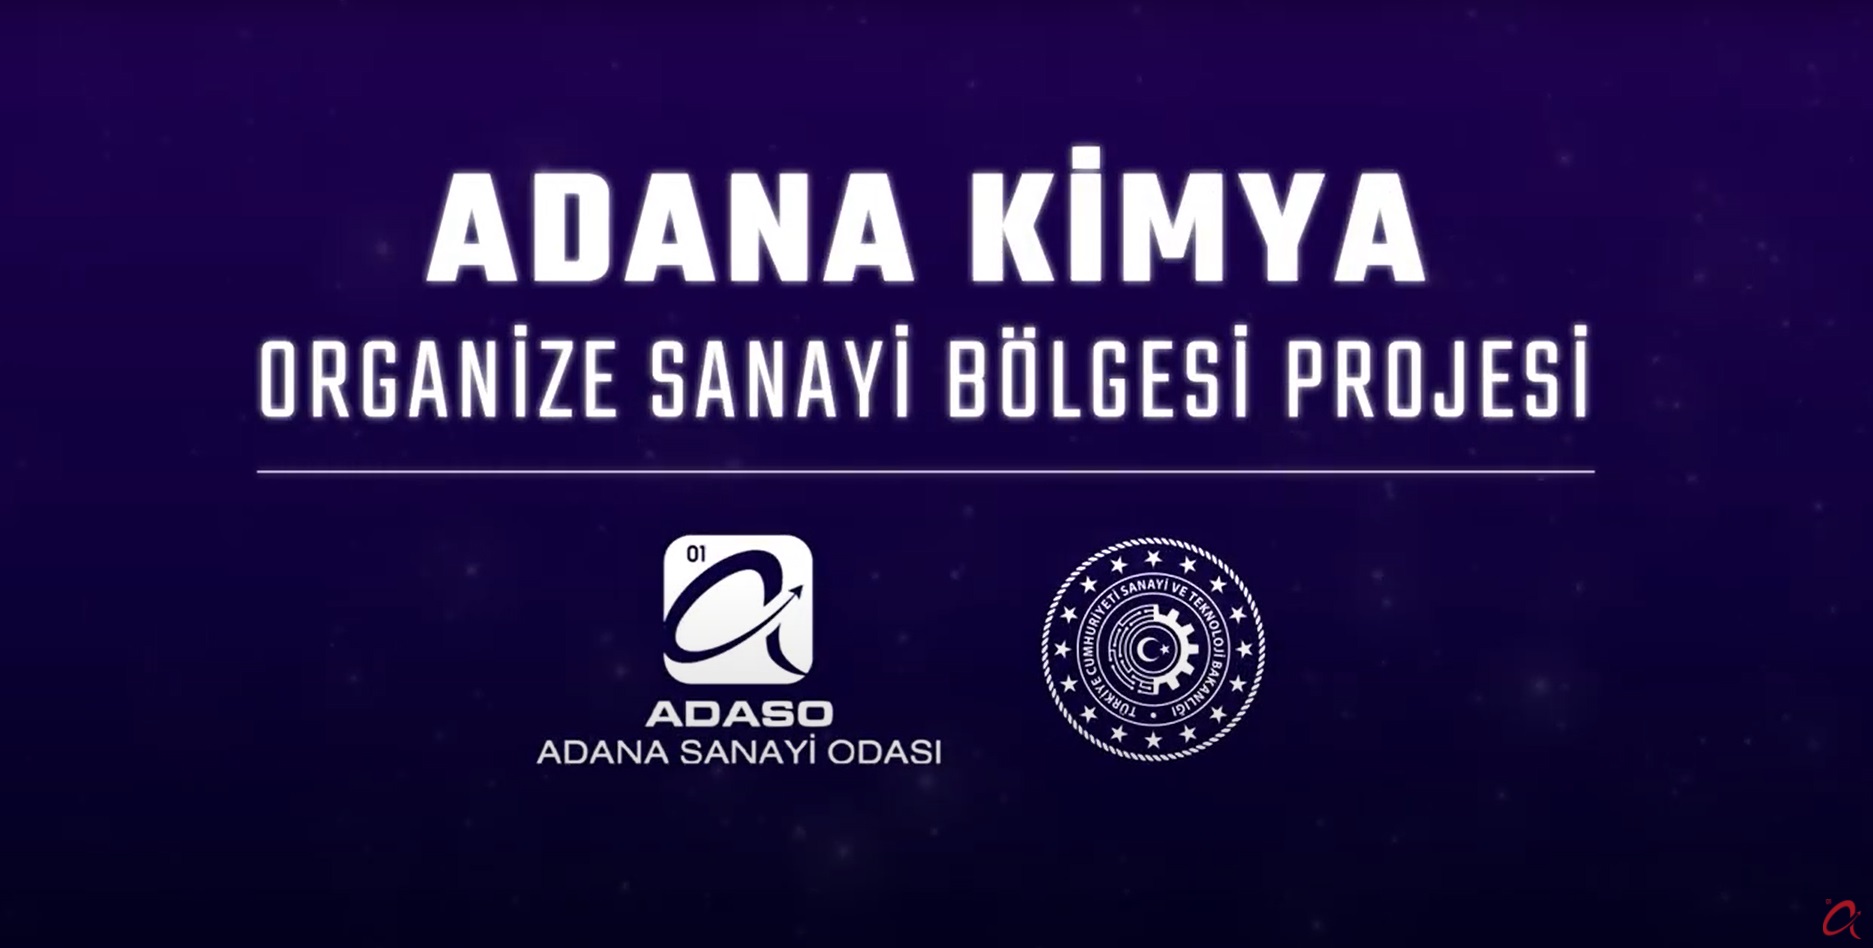 Adana Kimya Organize Sanayi Bölgesi Projesi